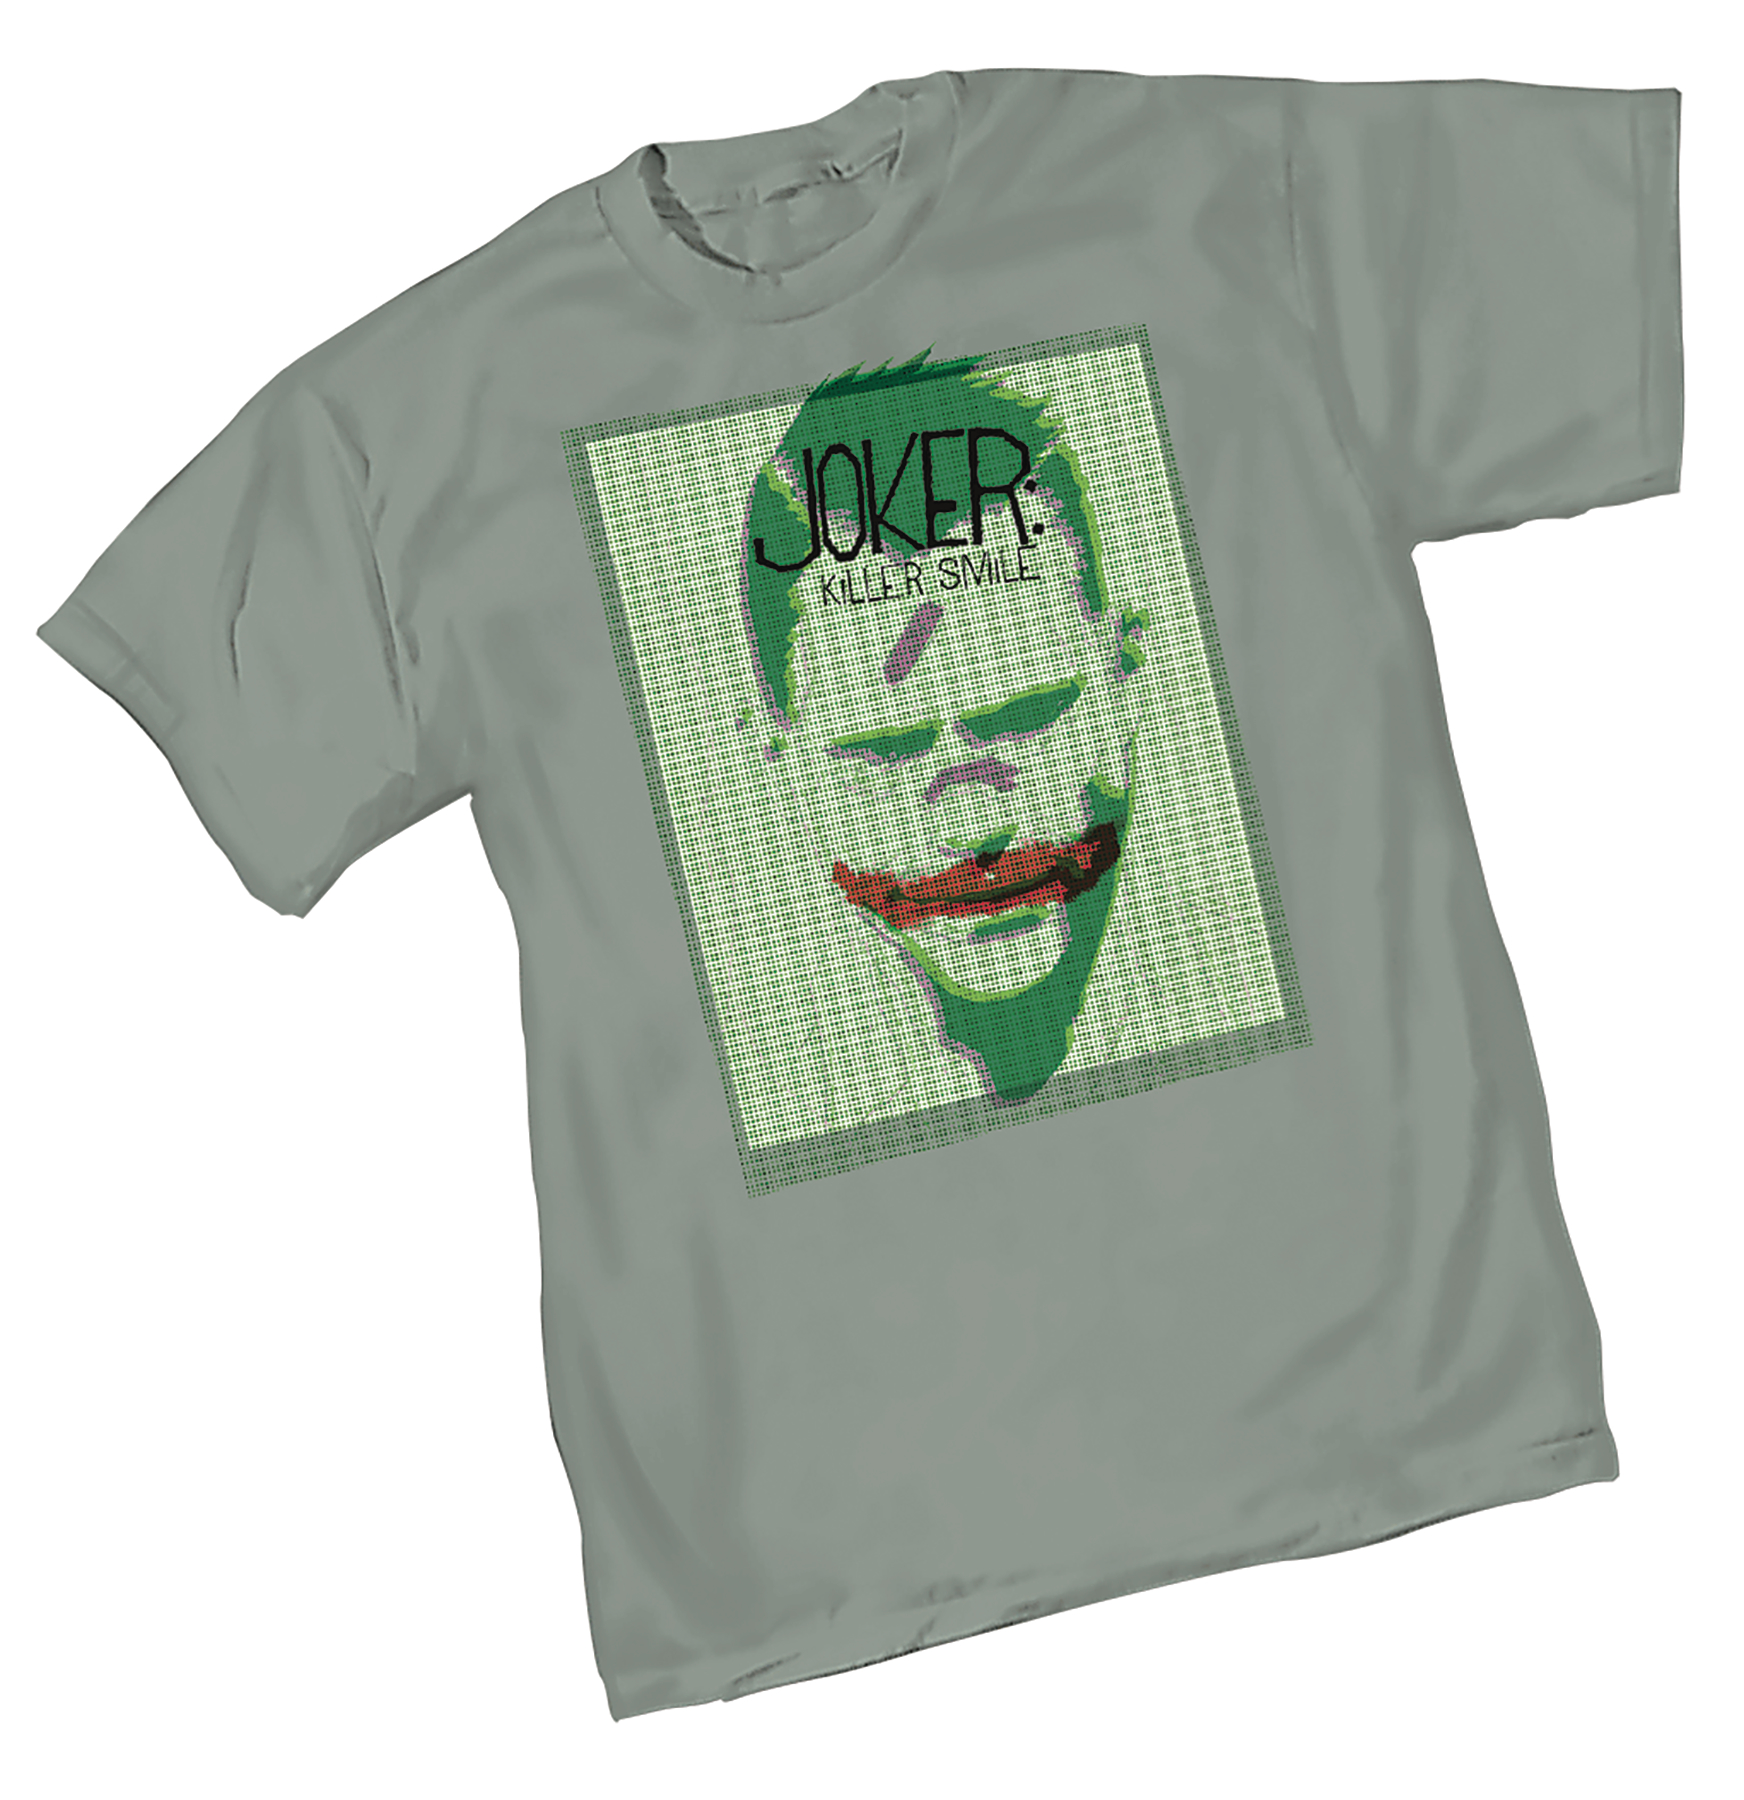 Joker Killer Smile T-Shirt Large